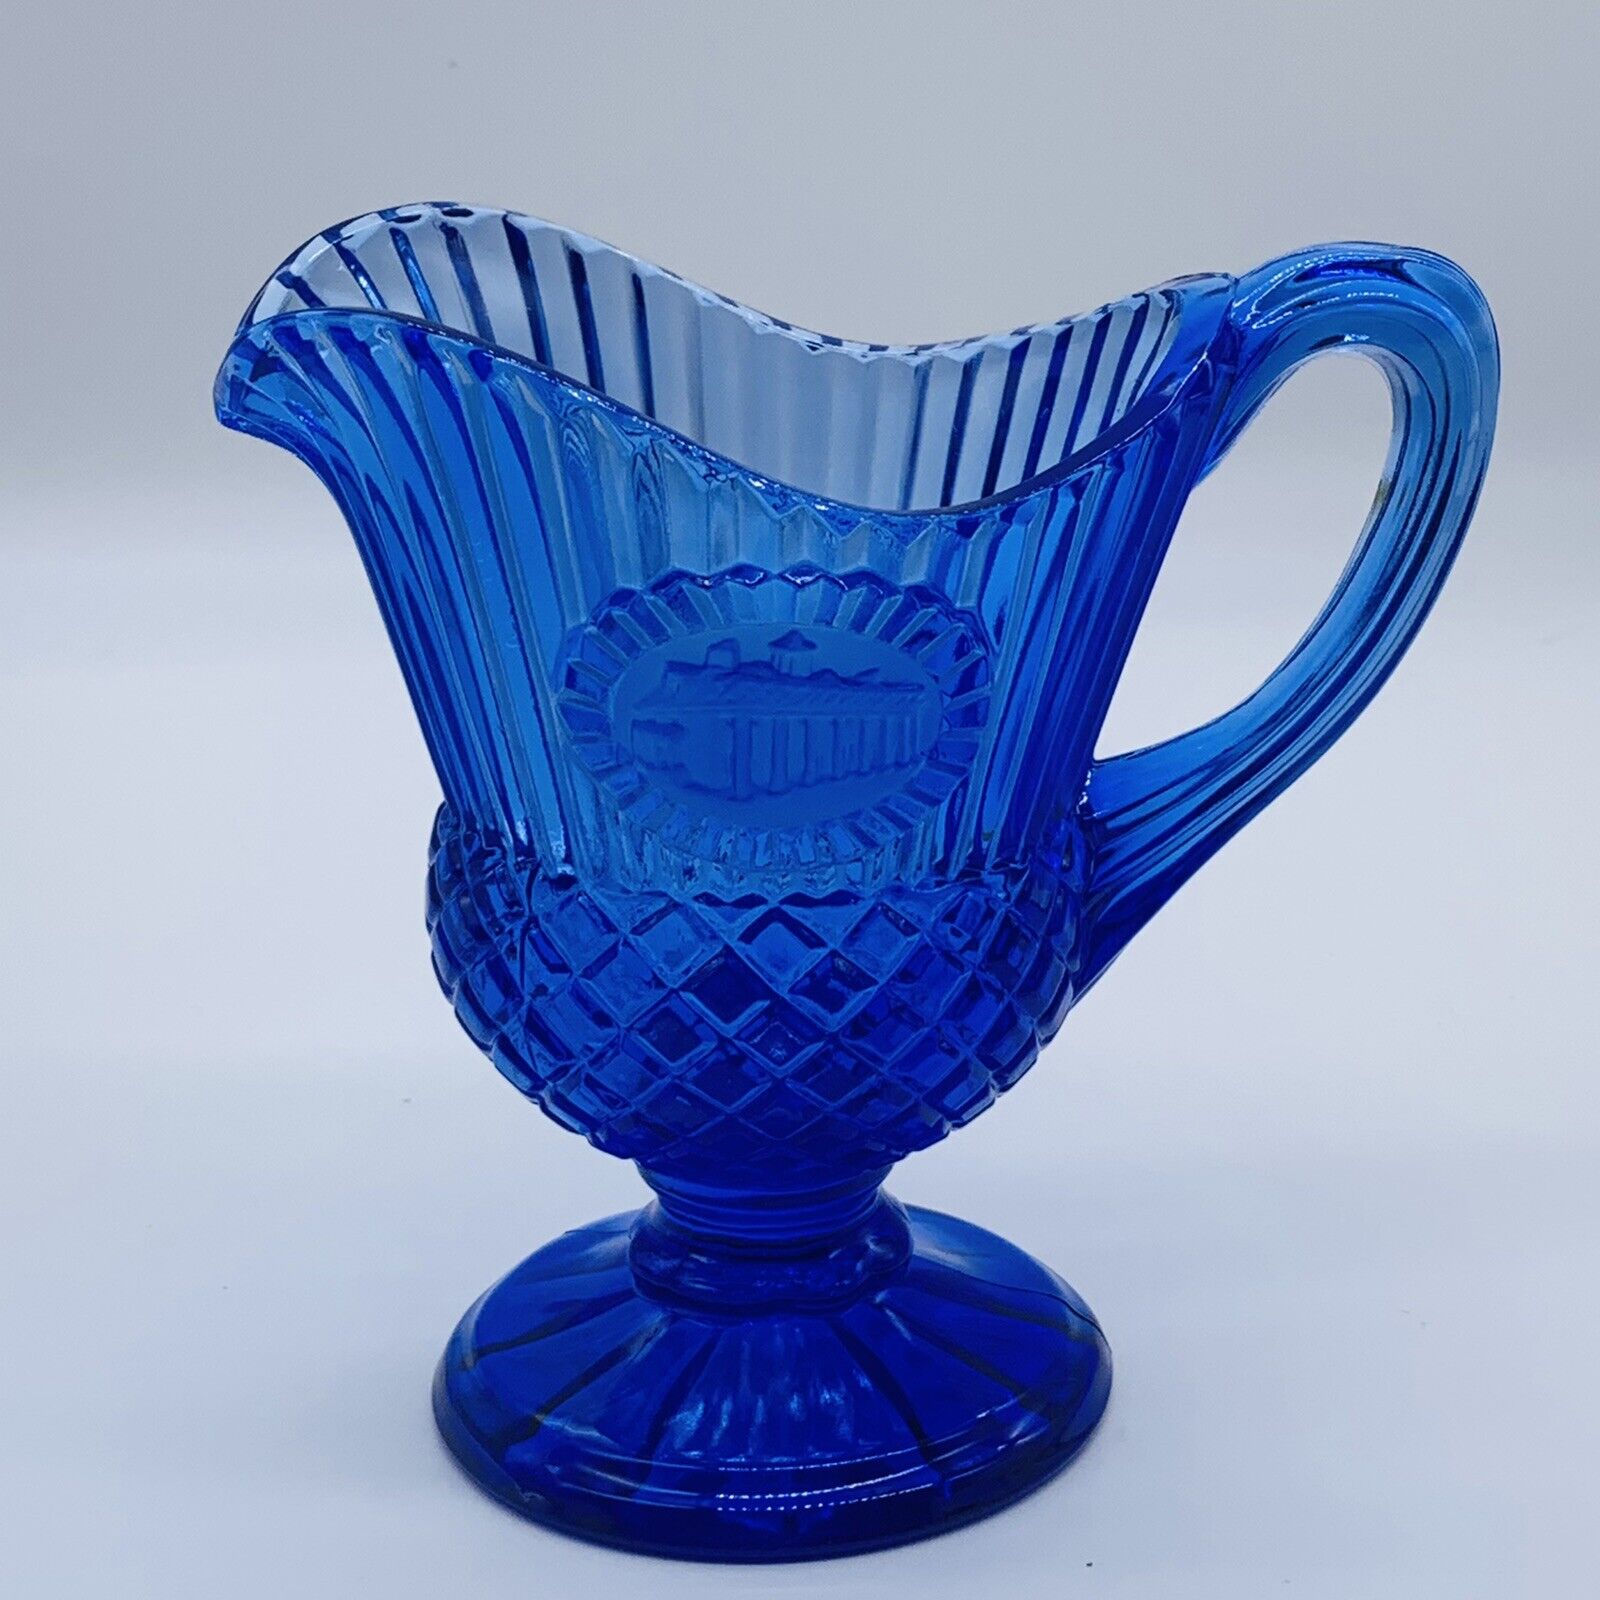 Vintage Avon Cobalt Blue Glass Pitcher Creamer Mt Vernon George Washington 5”T